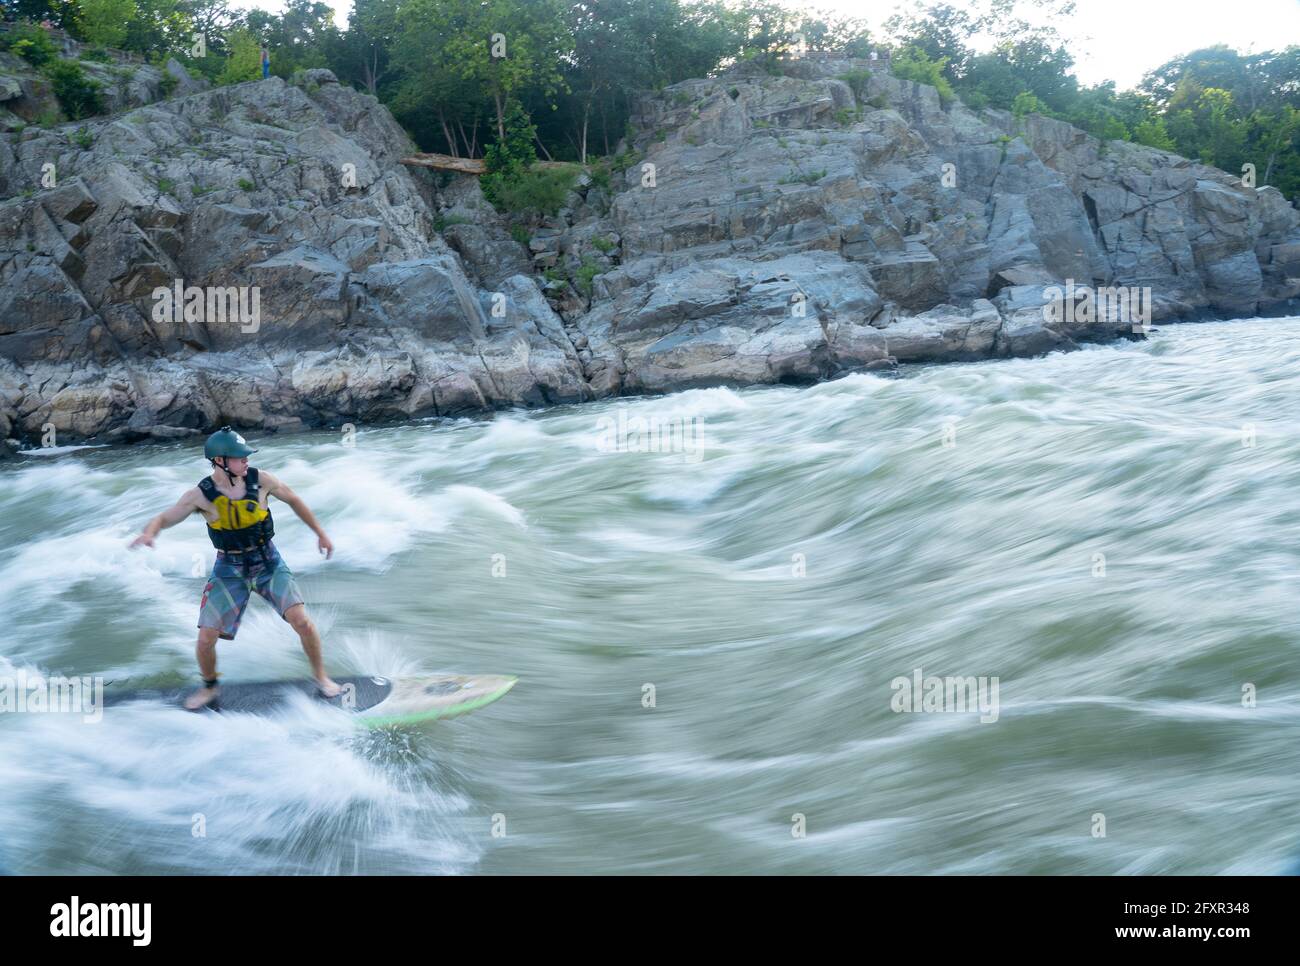 Ian Brown steht Up Paddle surft anspruchsvolles Wildwasser unter den Great Falls des Potomac River, der Grenze zwischen Maryland und Virginia, USA, Nordamerika Stockfoto